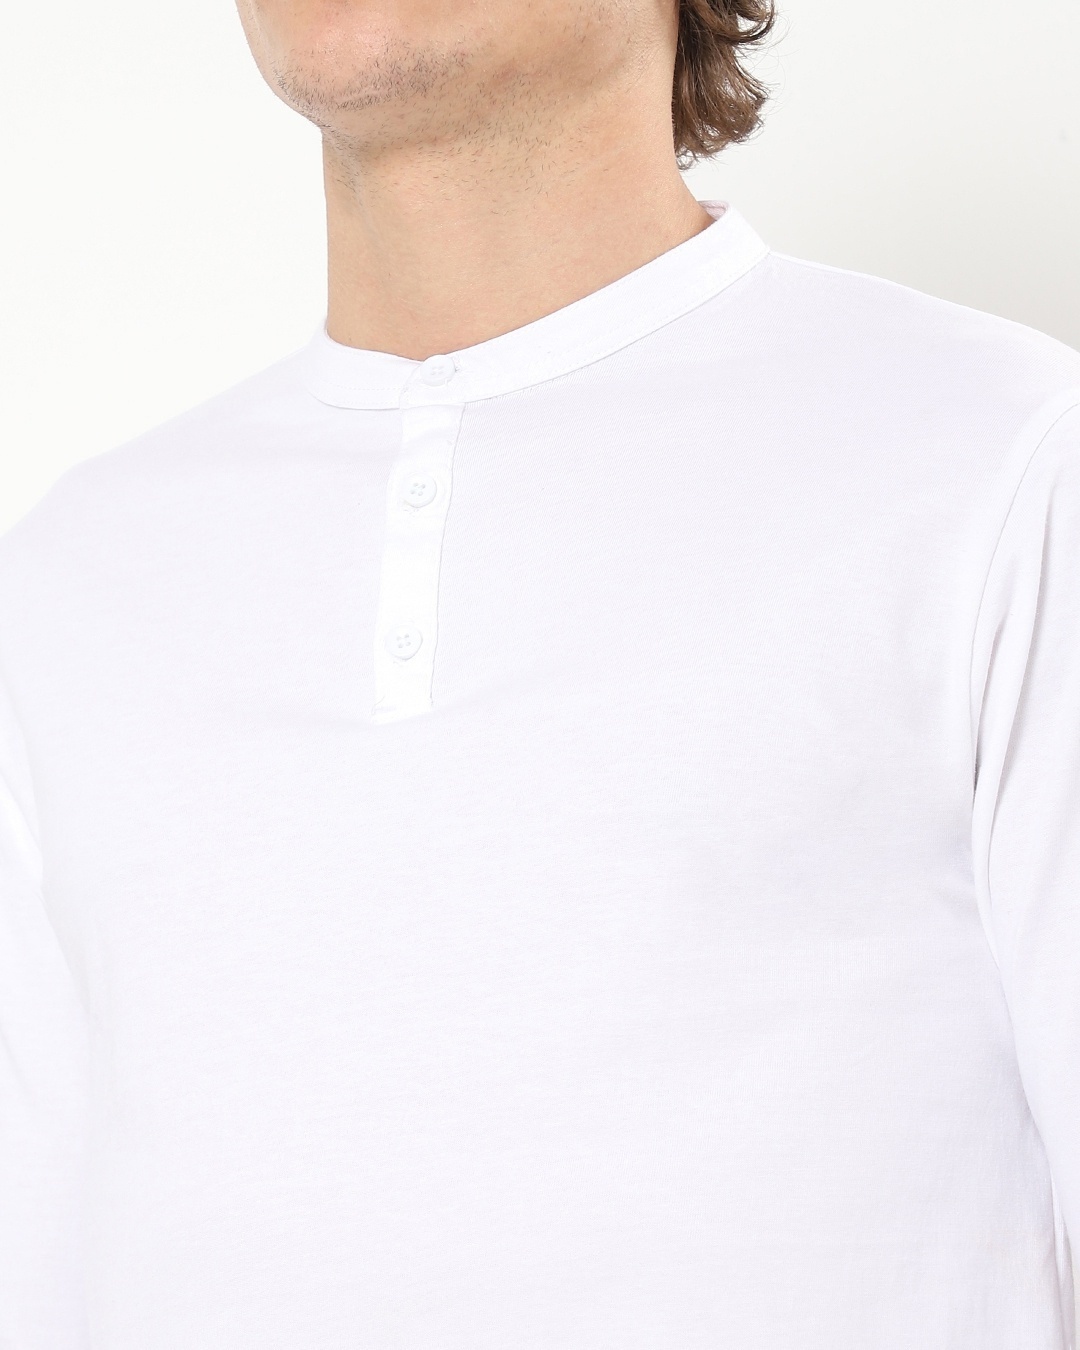 Shop Men's White Henley Plus Size T-shirt